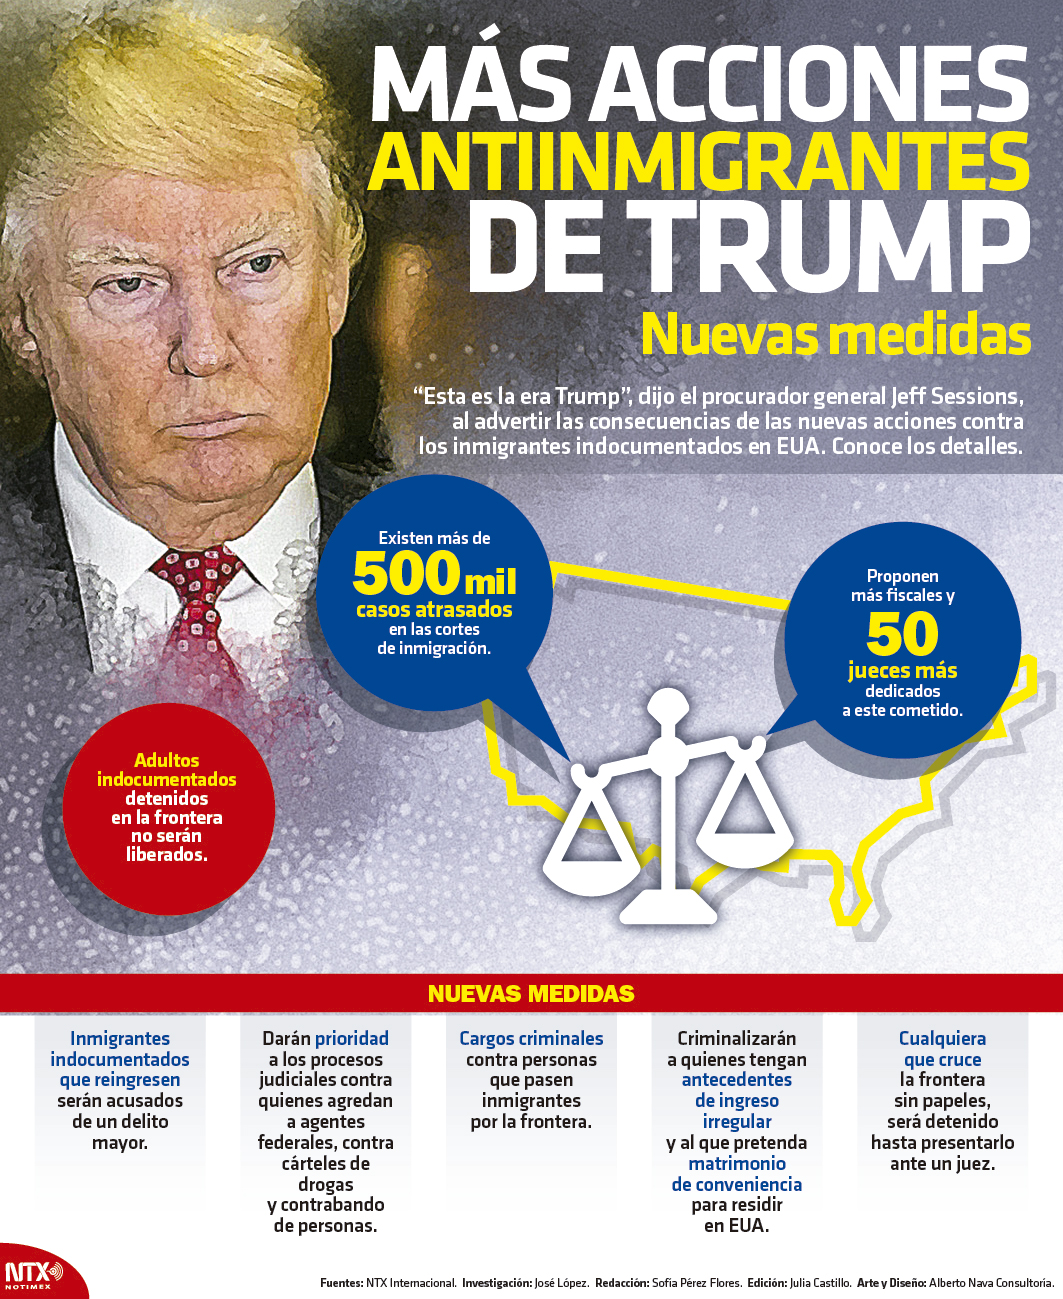 Ms acciones antiinmigrantes de Trump